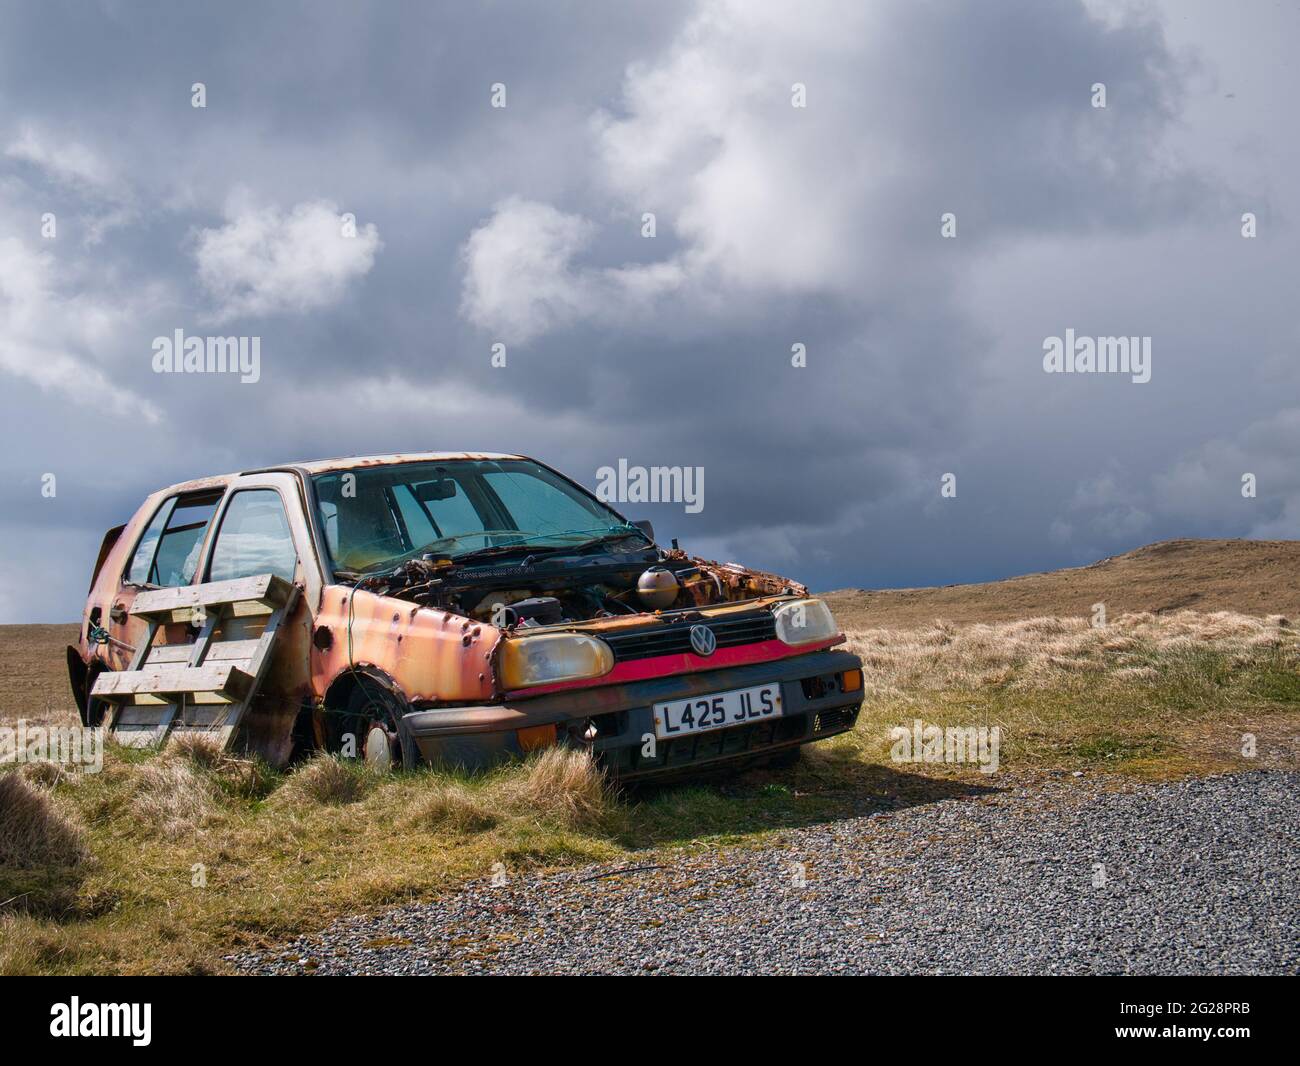 Un golf abandonné, blanc, 1993 VW maintenant coloré avec de la rouille se décompose dans un cadre rural. Pris par une journée ensoleillée avec des nuages de pluie qui s'amassent. Banque D'Images